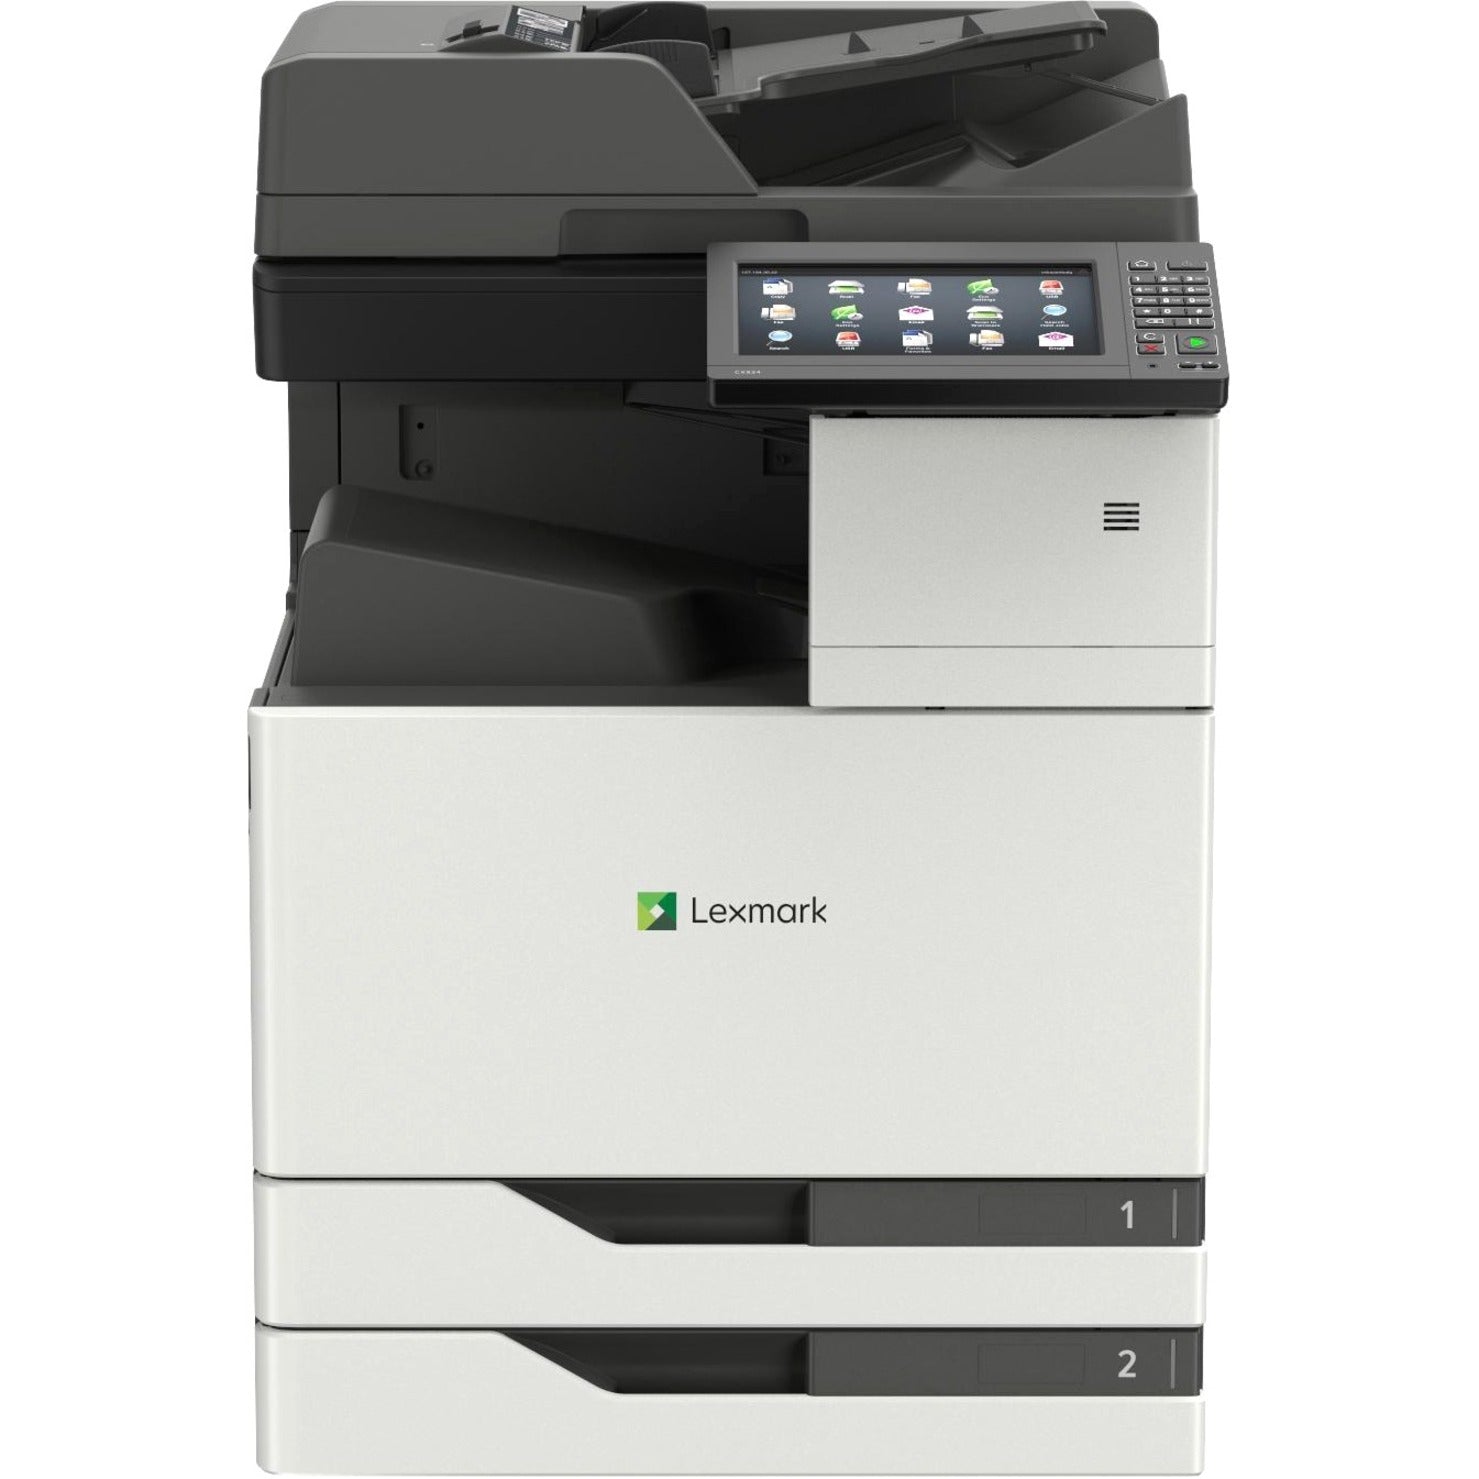 Lexmark 32CT065 CX921de Multifunction Color Laser Printer, Automatic Duplex, 35 ppm, 1200 x 1200 dpi